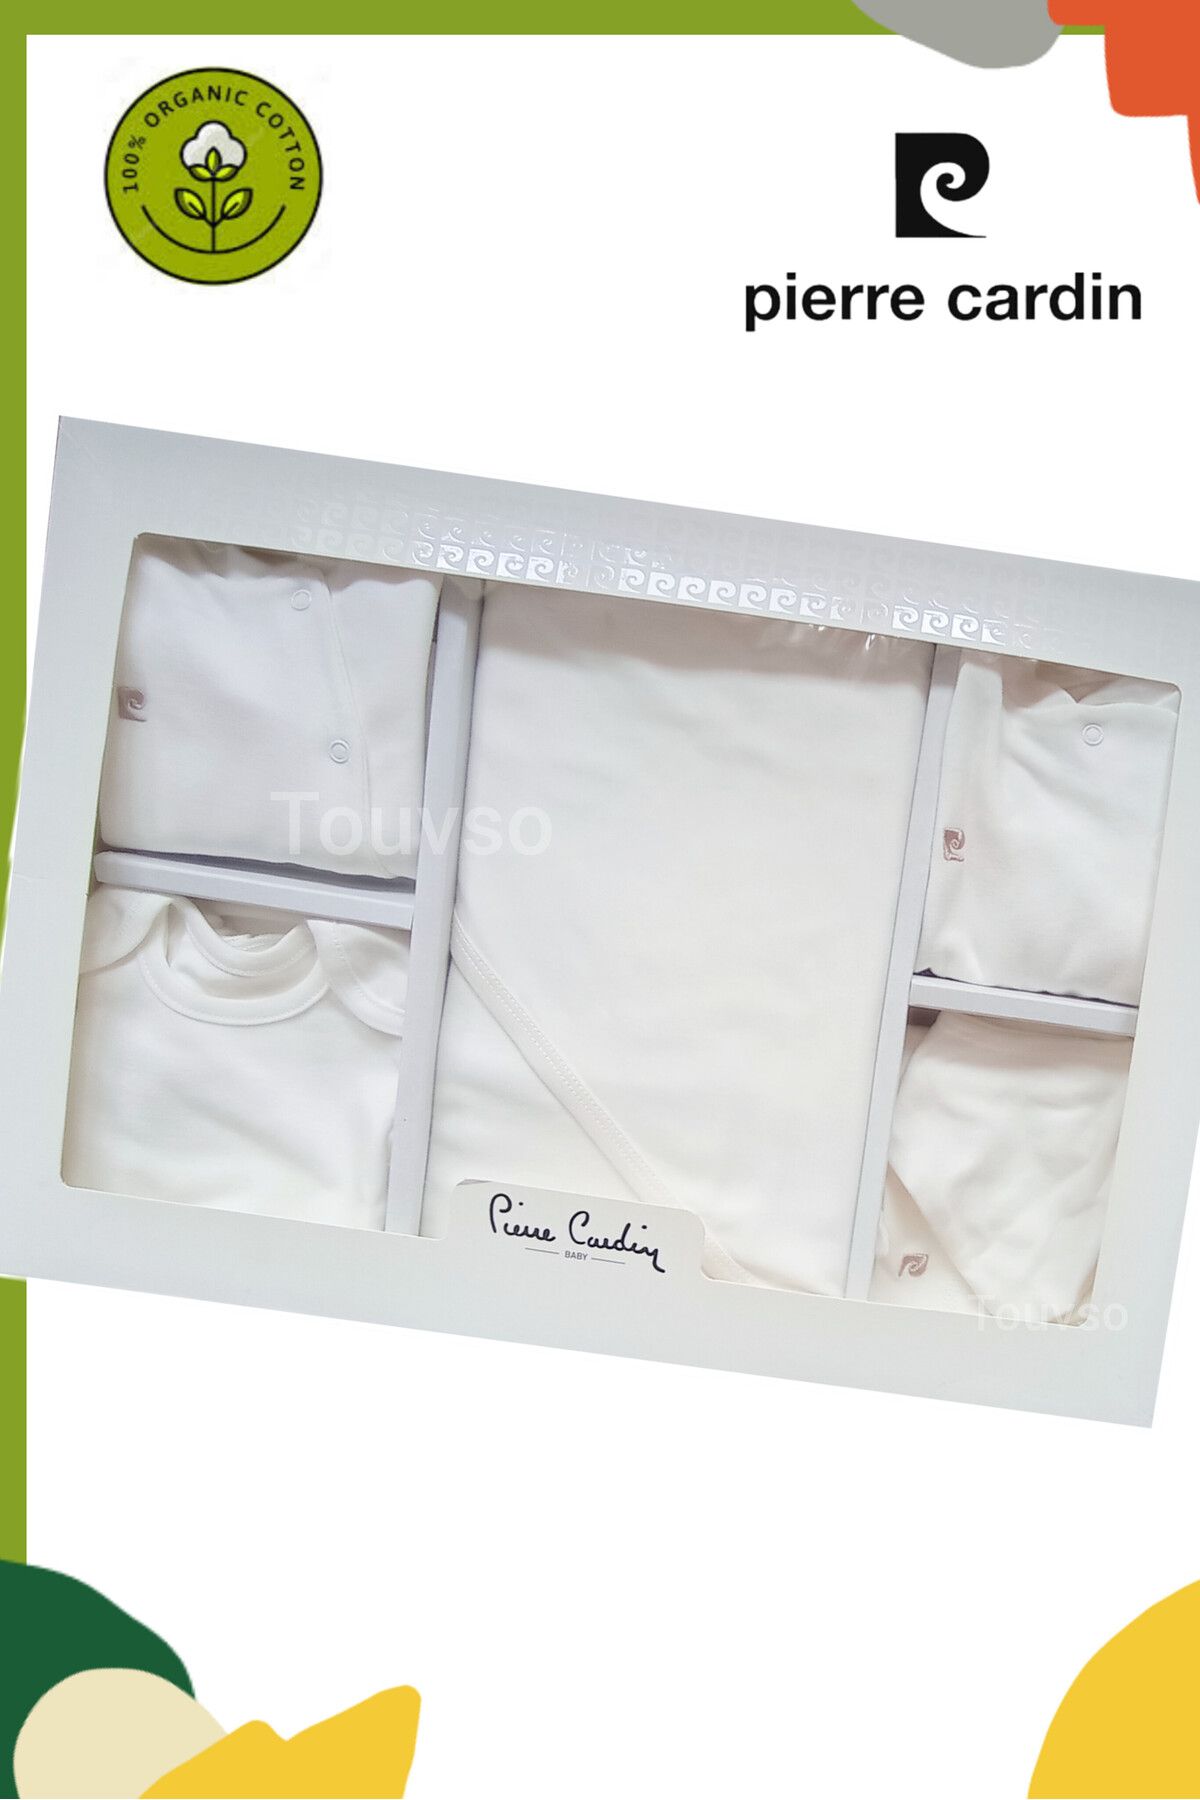 Pierre Cardin %100 Organik 10'lu Düz Unisex Bebek Hastane Çıkış Seti, Yenidoğan Ortak Bebek Hediyelik Takım